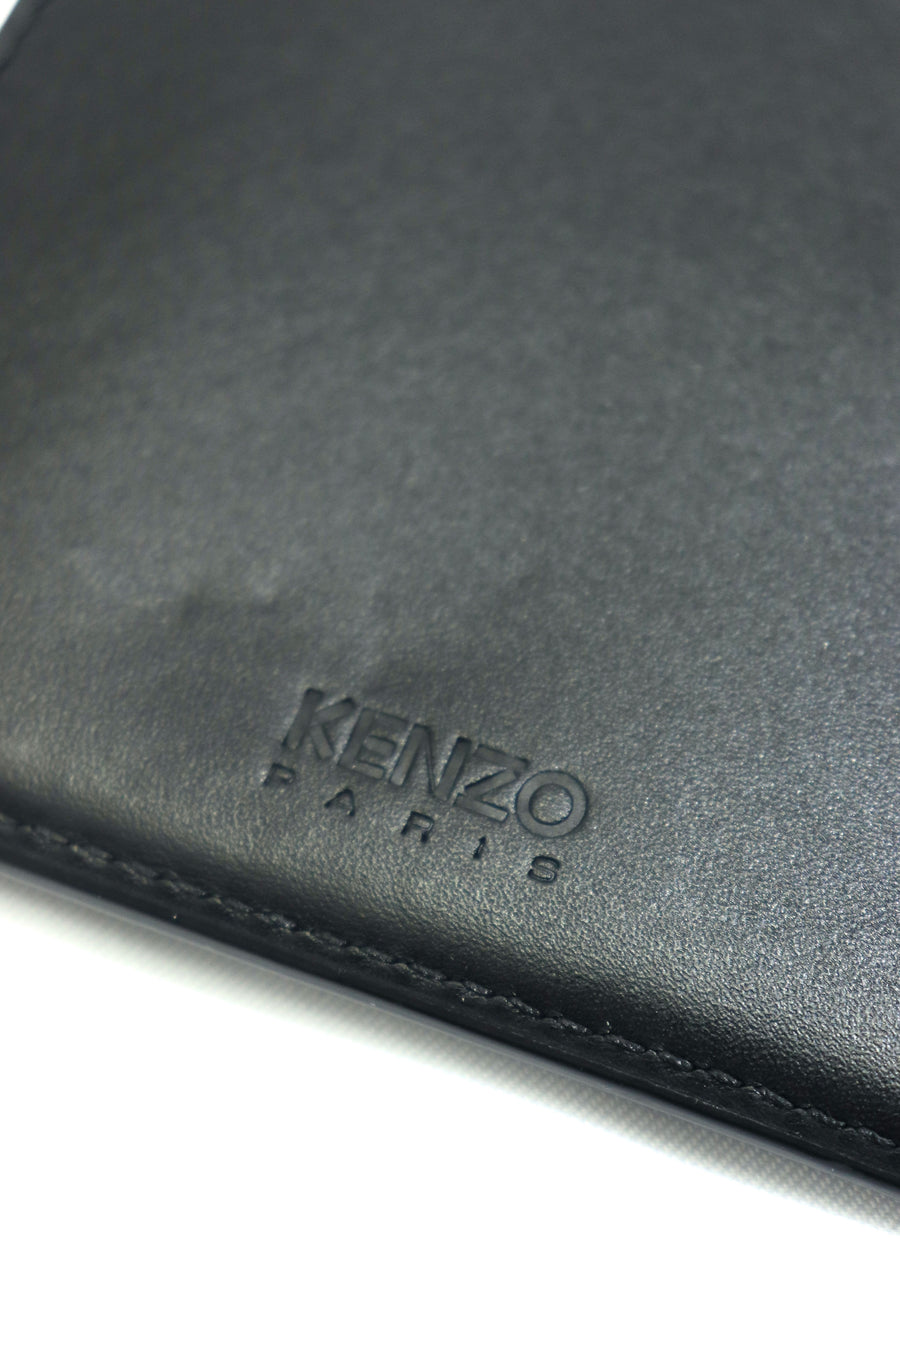 KENZO  Zip Wallet(Kenzo Emboss Target Print)